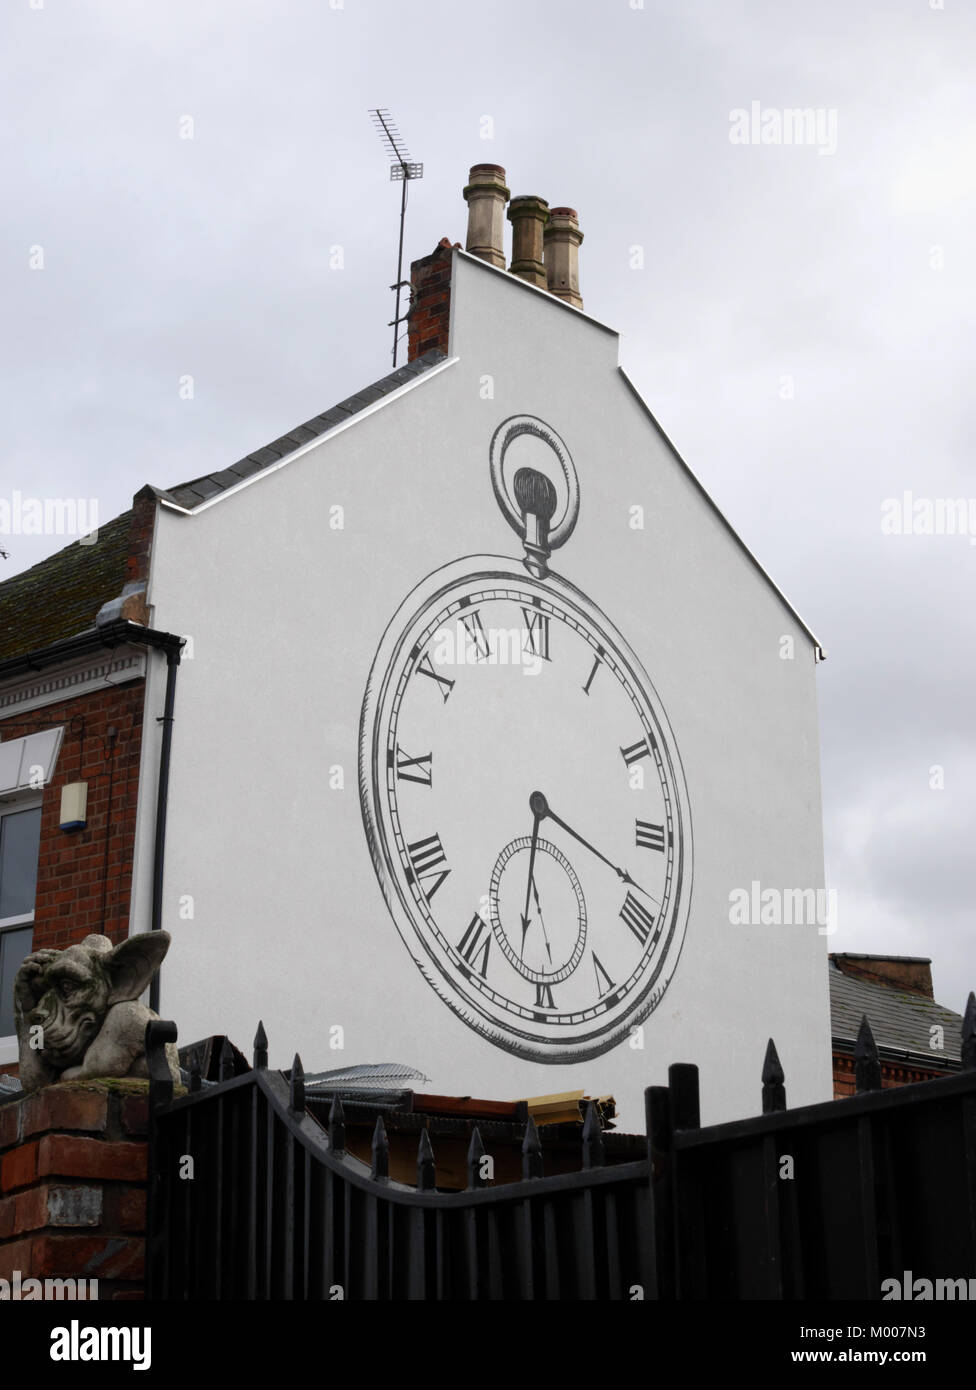 Un reloj de bolsillo diseño en esta final en Craven Terrace Street, Coventry, conmemora la historia de la alta relojería Chapelfields zona de la ciudad. Foto de stock